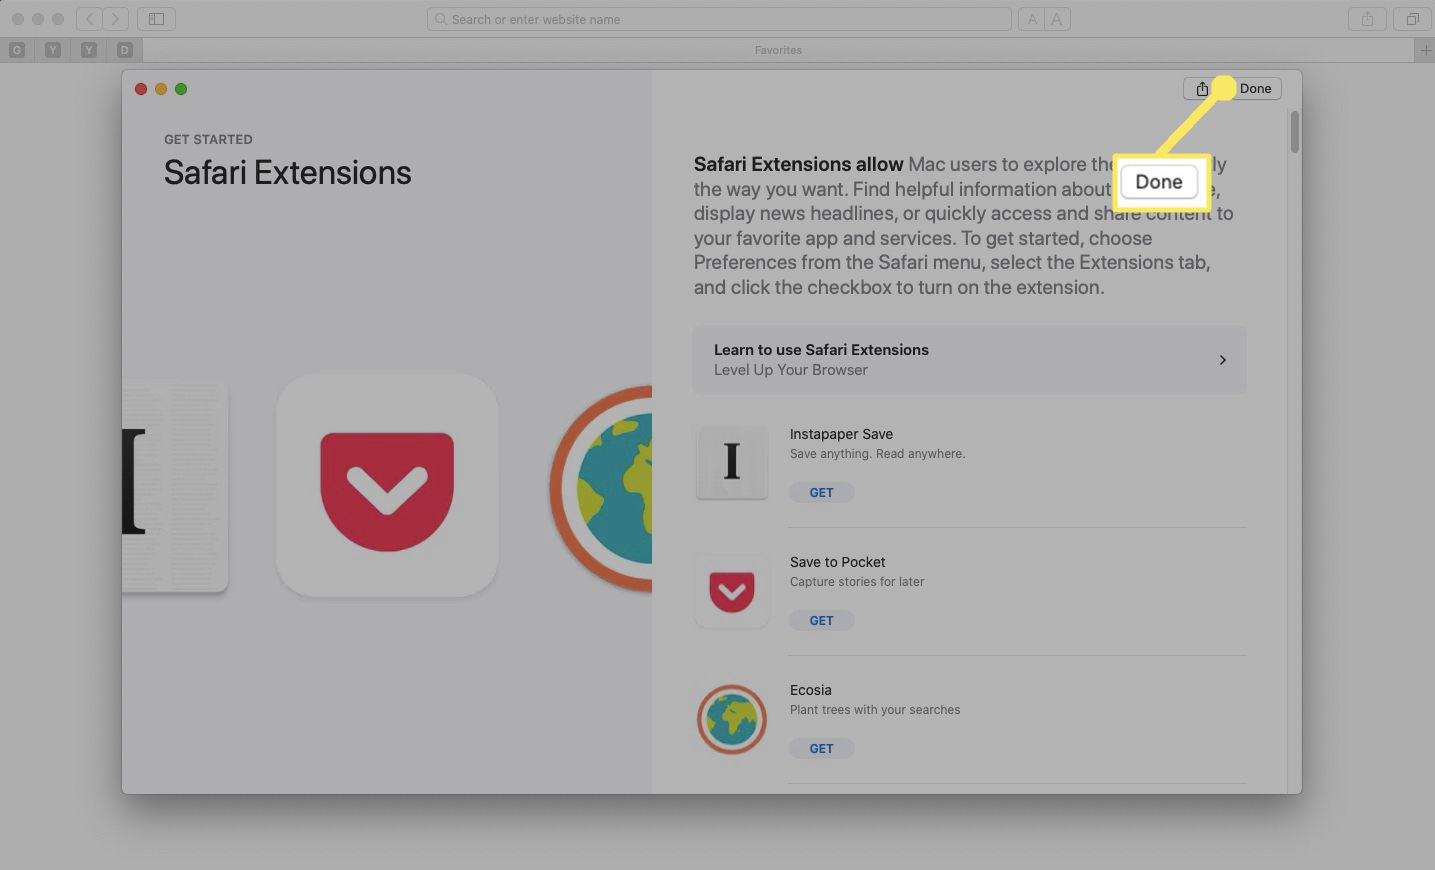 Úvodní stránka Mac App Store